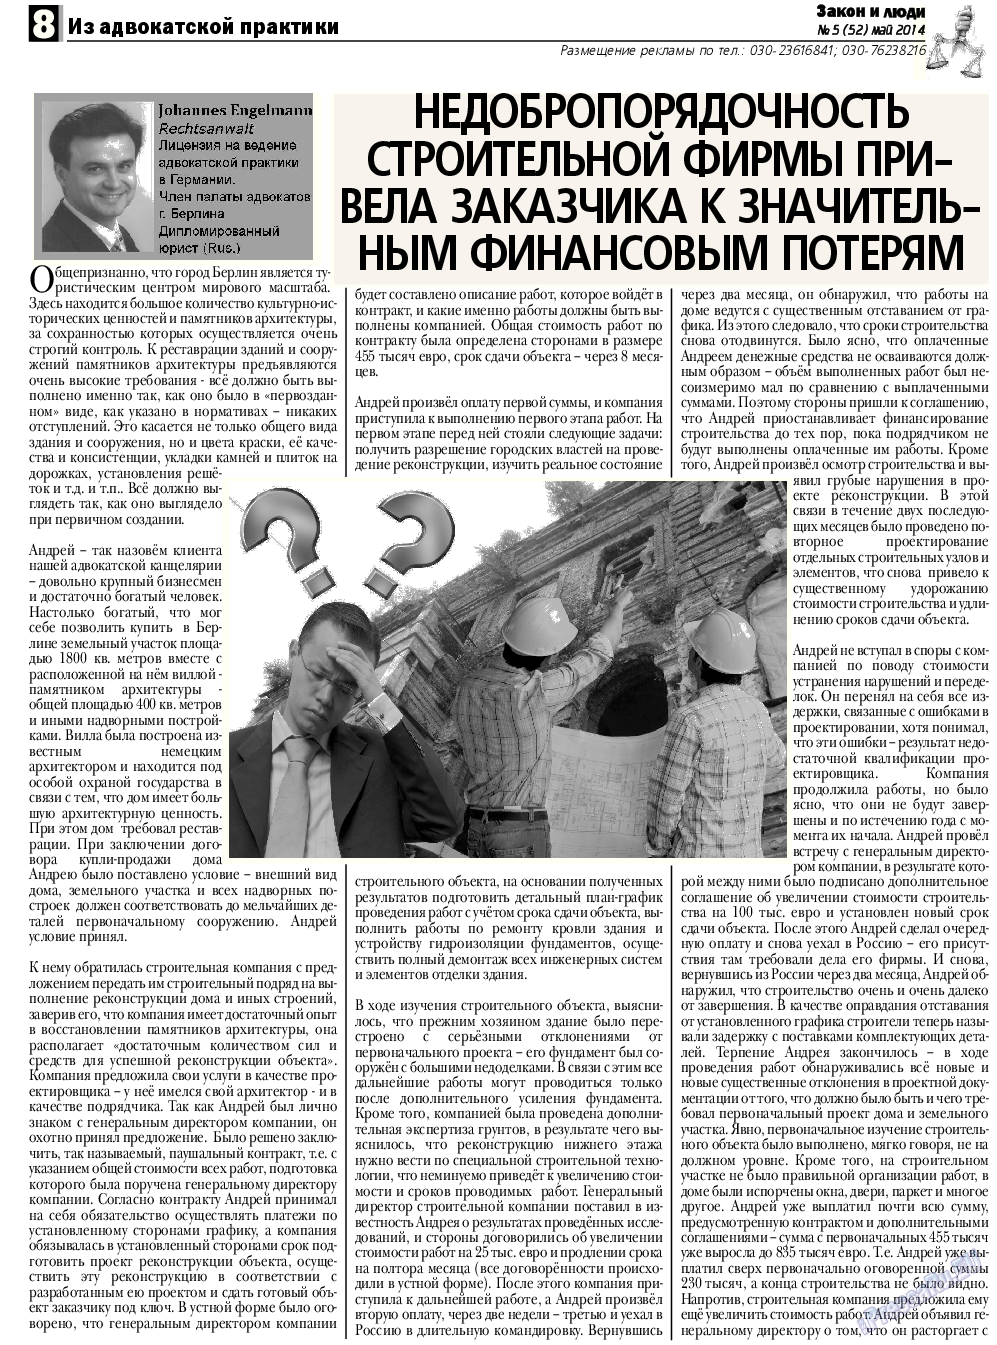 Закон и люди, газета. 2014 №5 стр.8